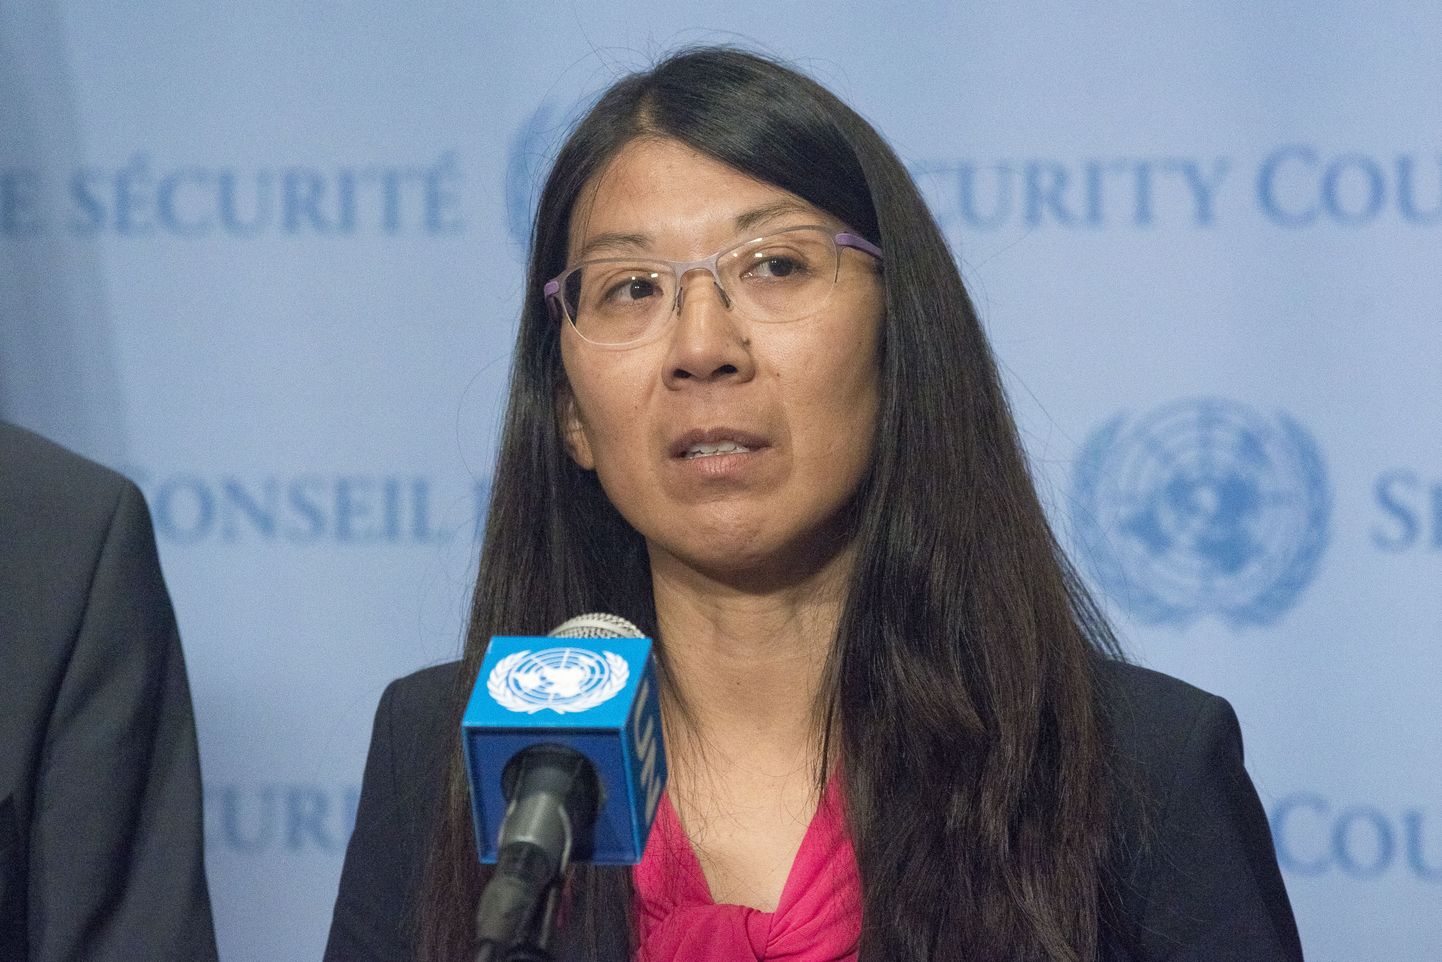 MSF-i president Joanne Liu